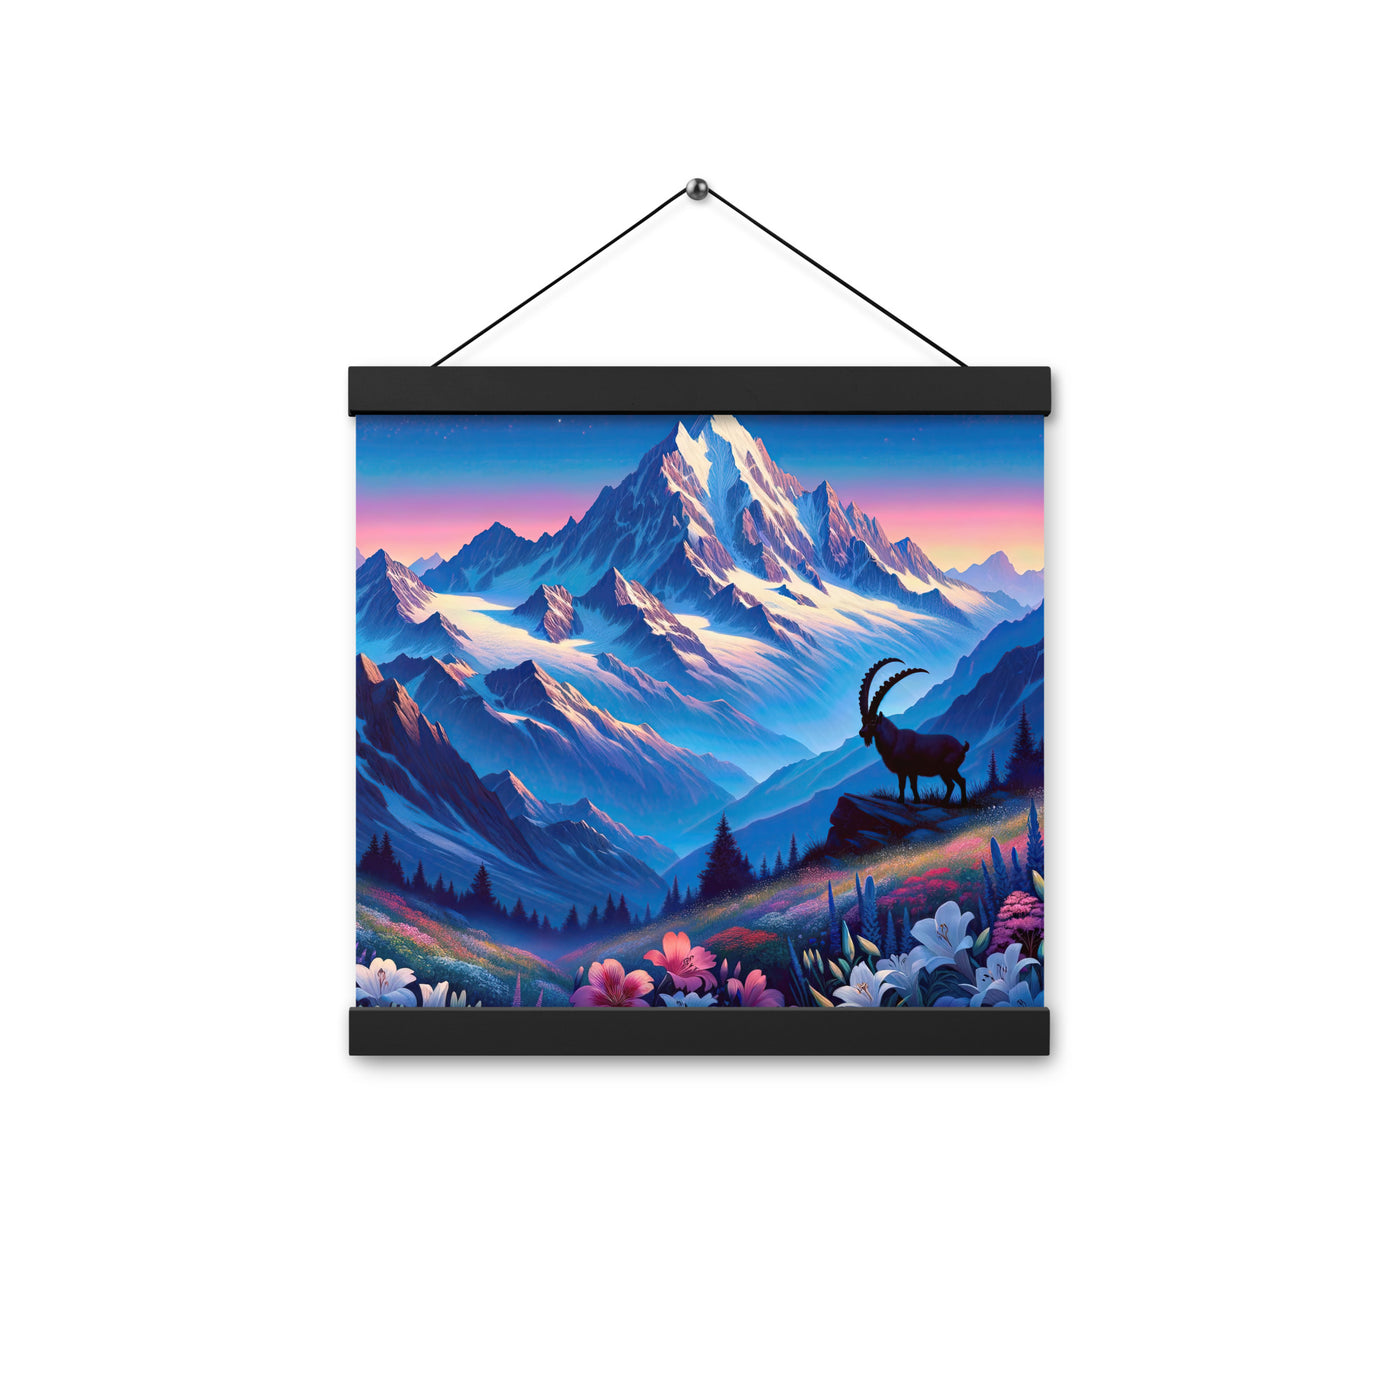 Steinbock bei Dämmerung in den Alpen, sonnengeküsste Schneegipfel - Premium Poster mit Aufhängung berge xxx yyy zzz 30.5 x 30.5 cm